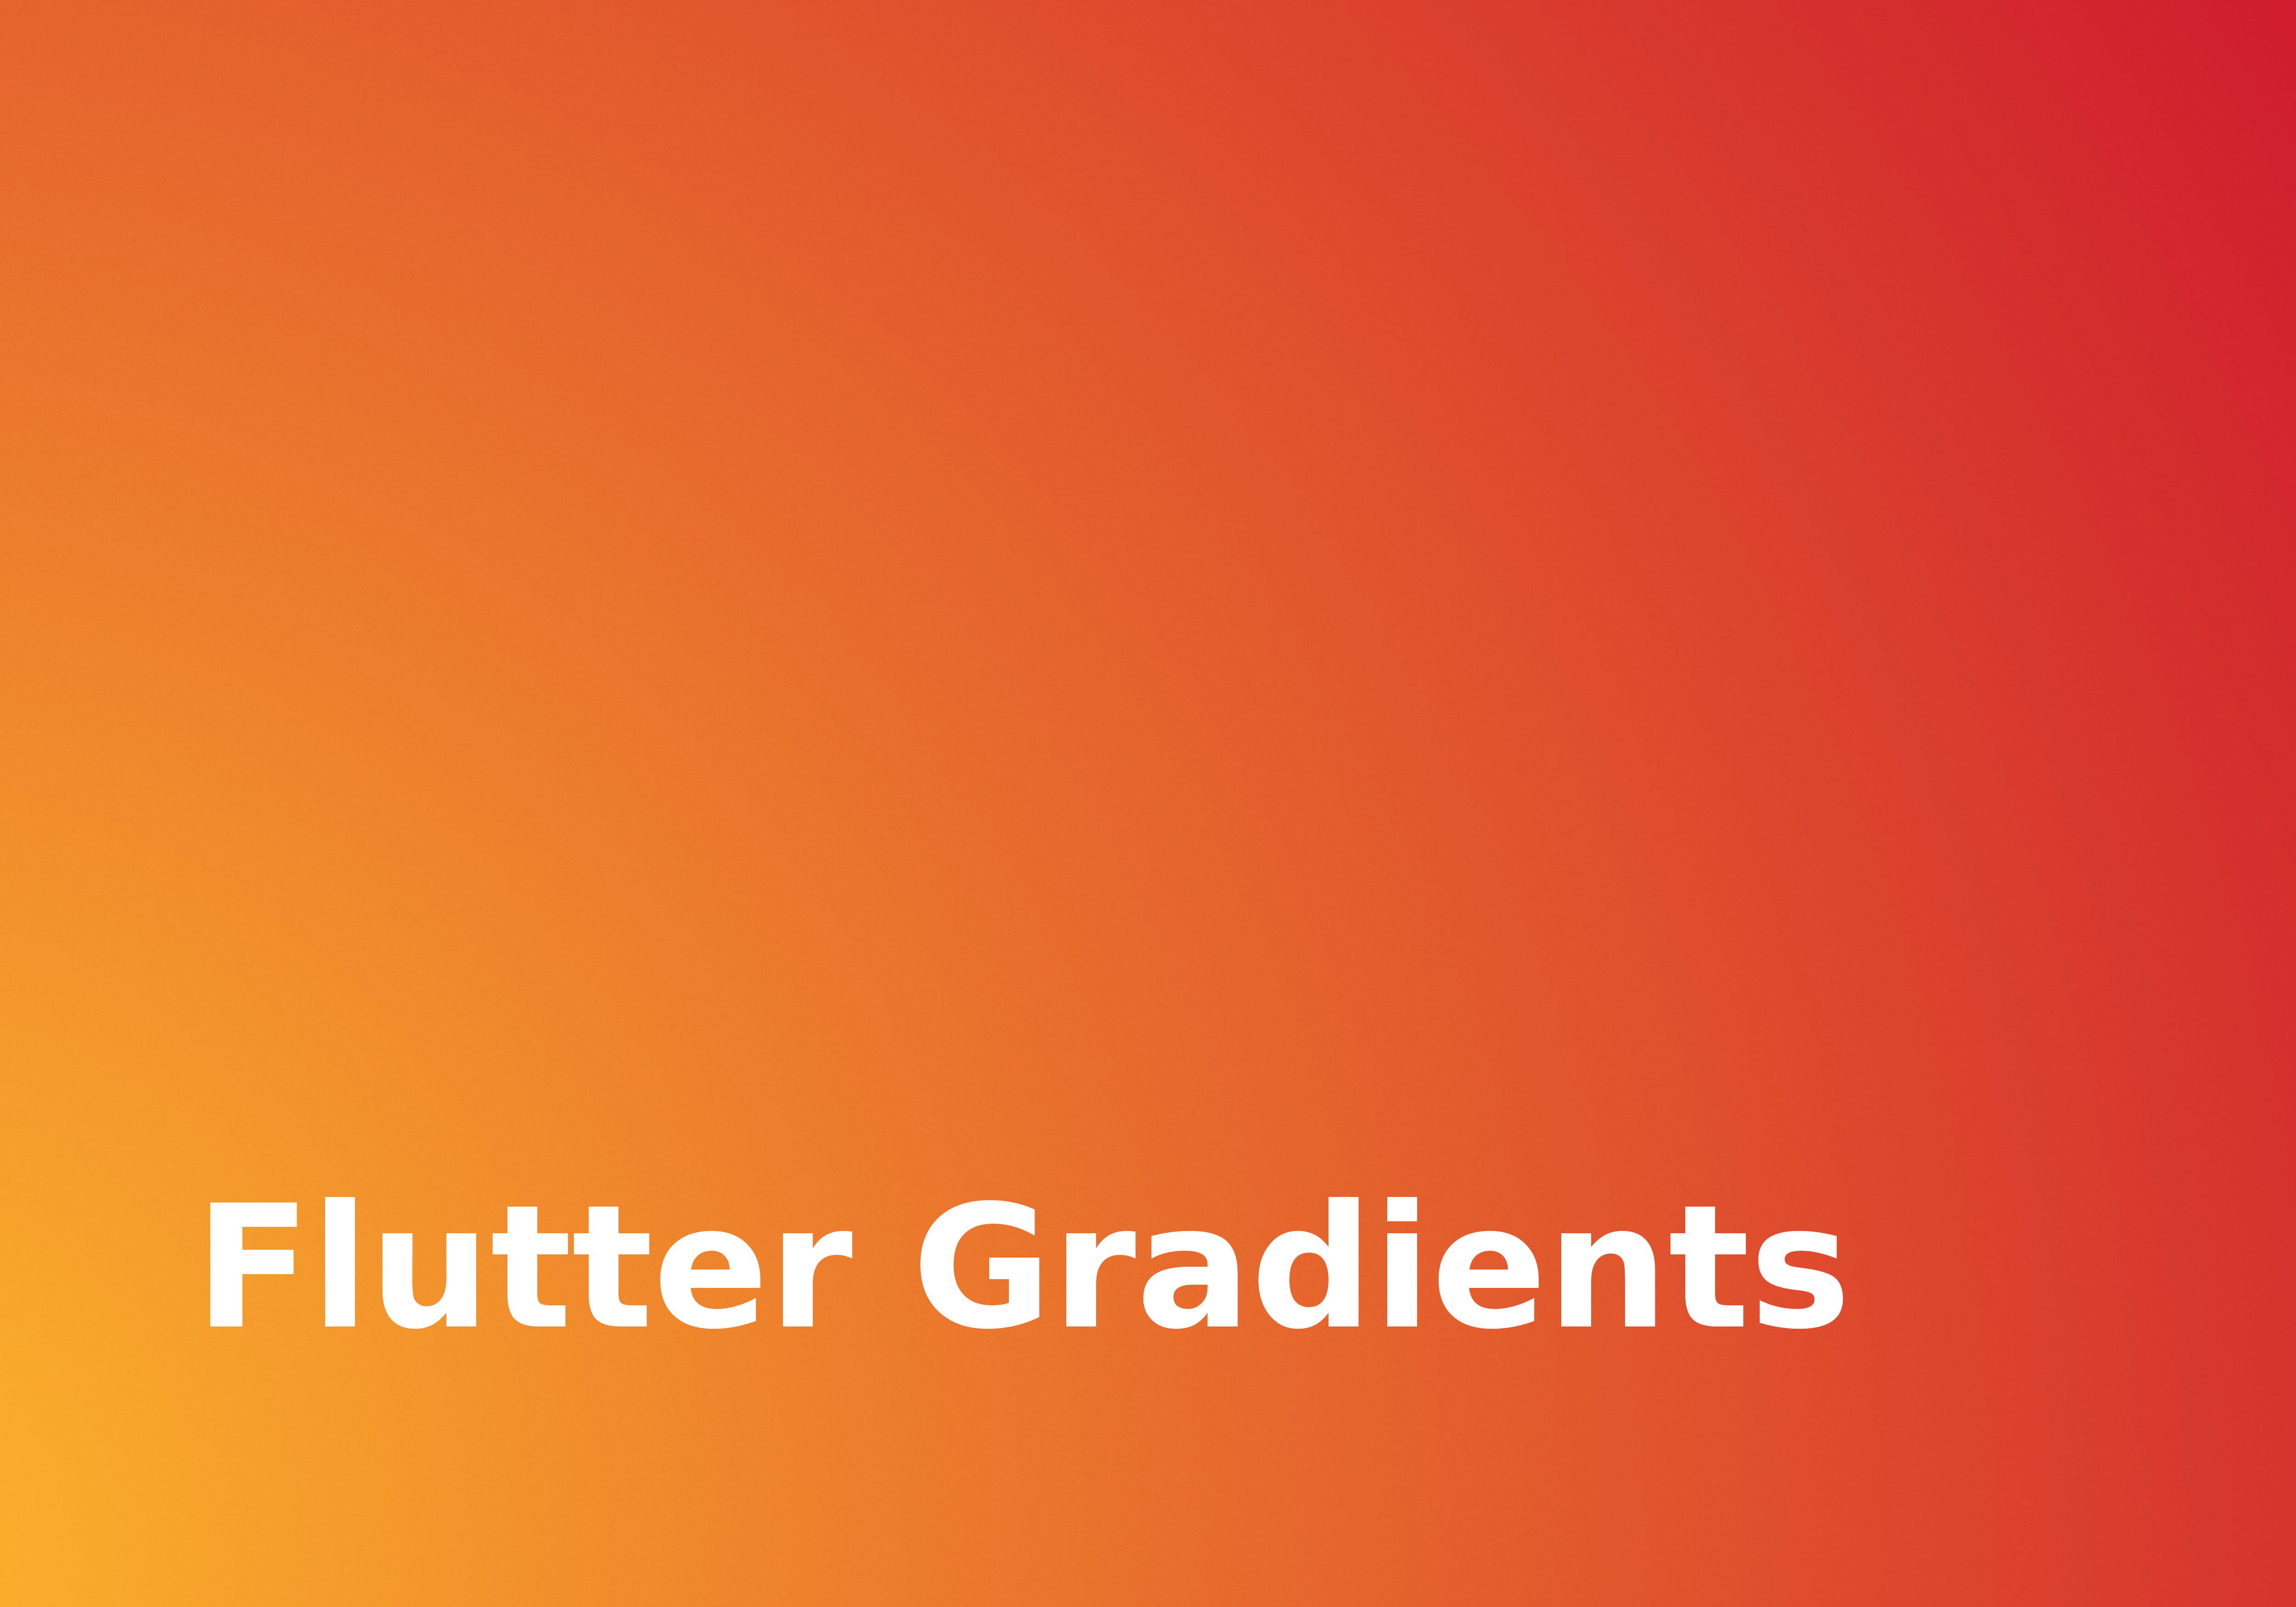 Flutter Gradients là một trong những chủ đề được yêu thích trong lập trình ứng dụng di động hiện nay. Hãy tìm hiểu những Gradient đầy sáng tạo và đẹp mắt trong ảnh liên quan này!